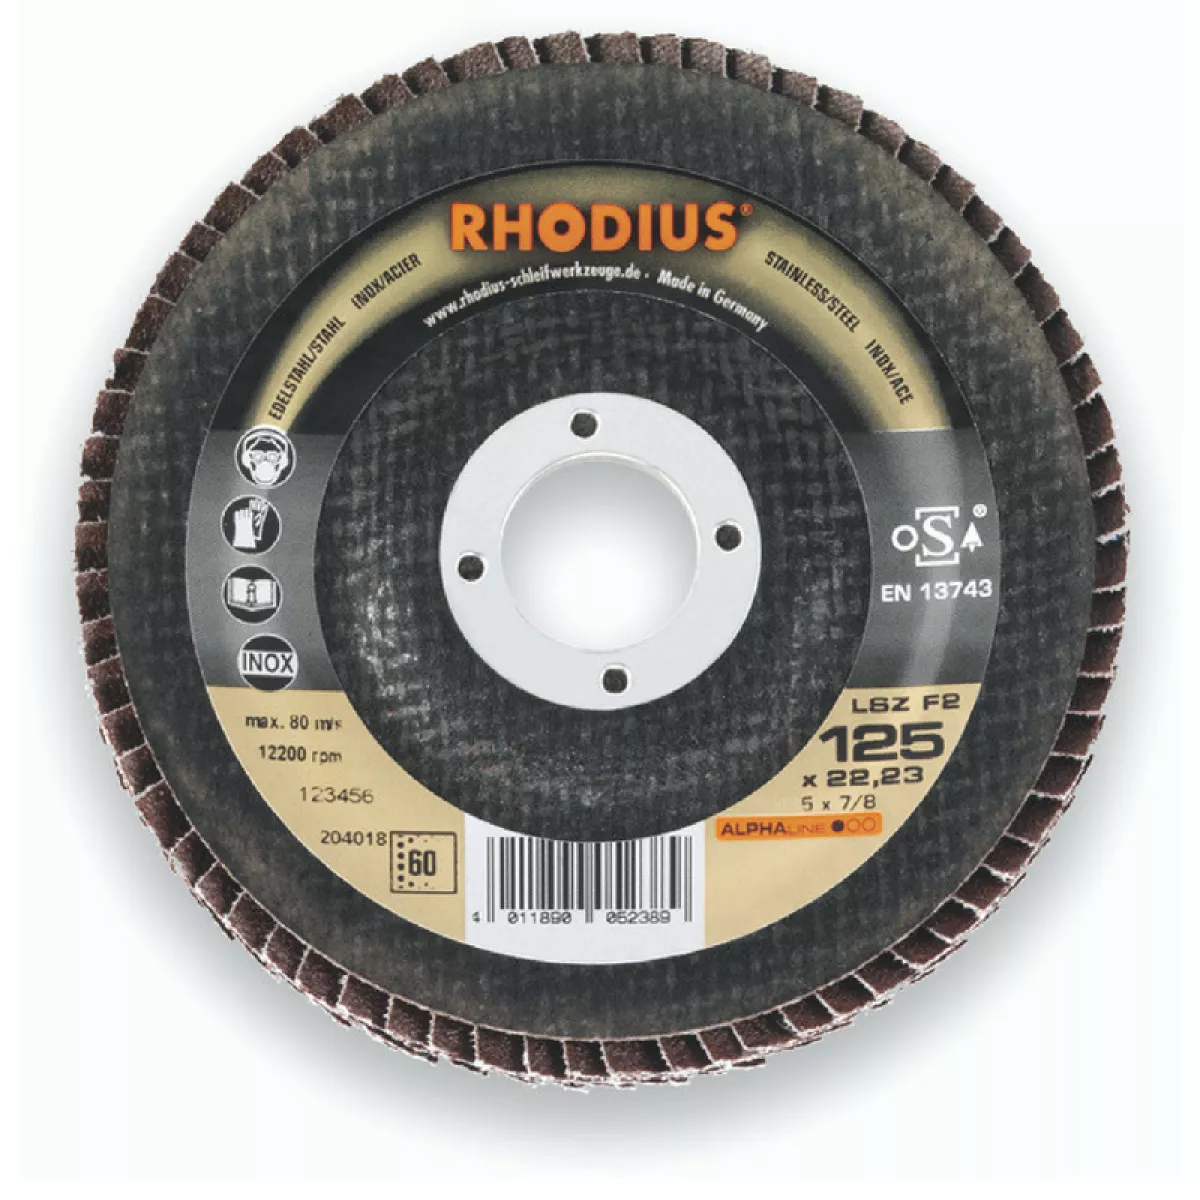 #1 - Rhodius flapskive 125mm (K60)